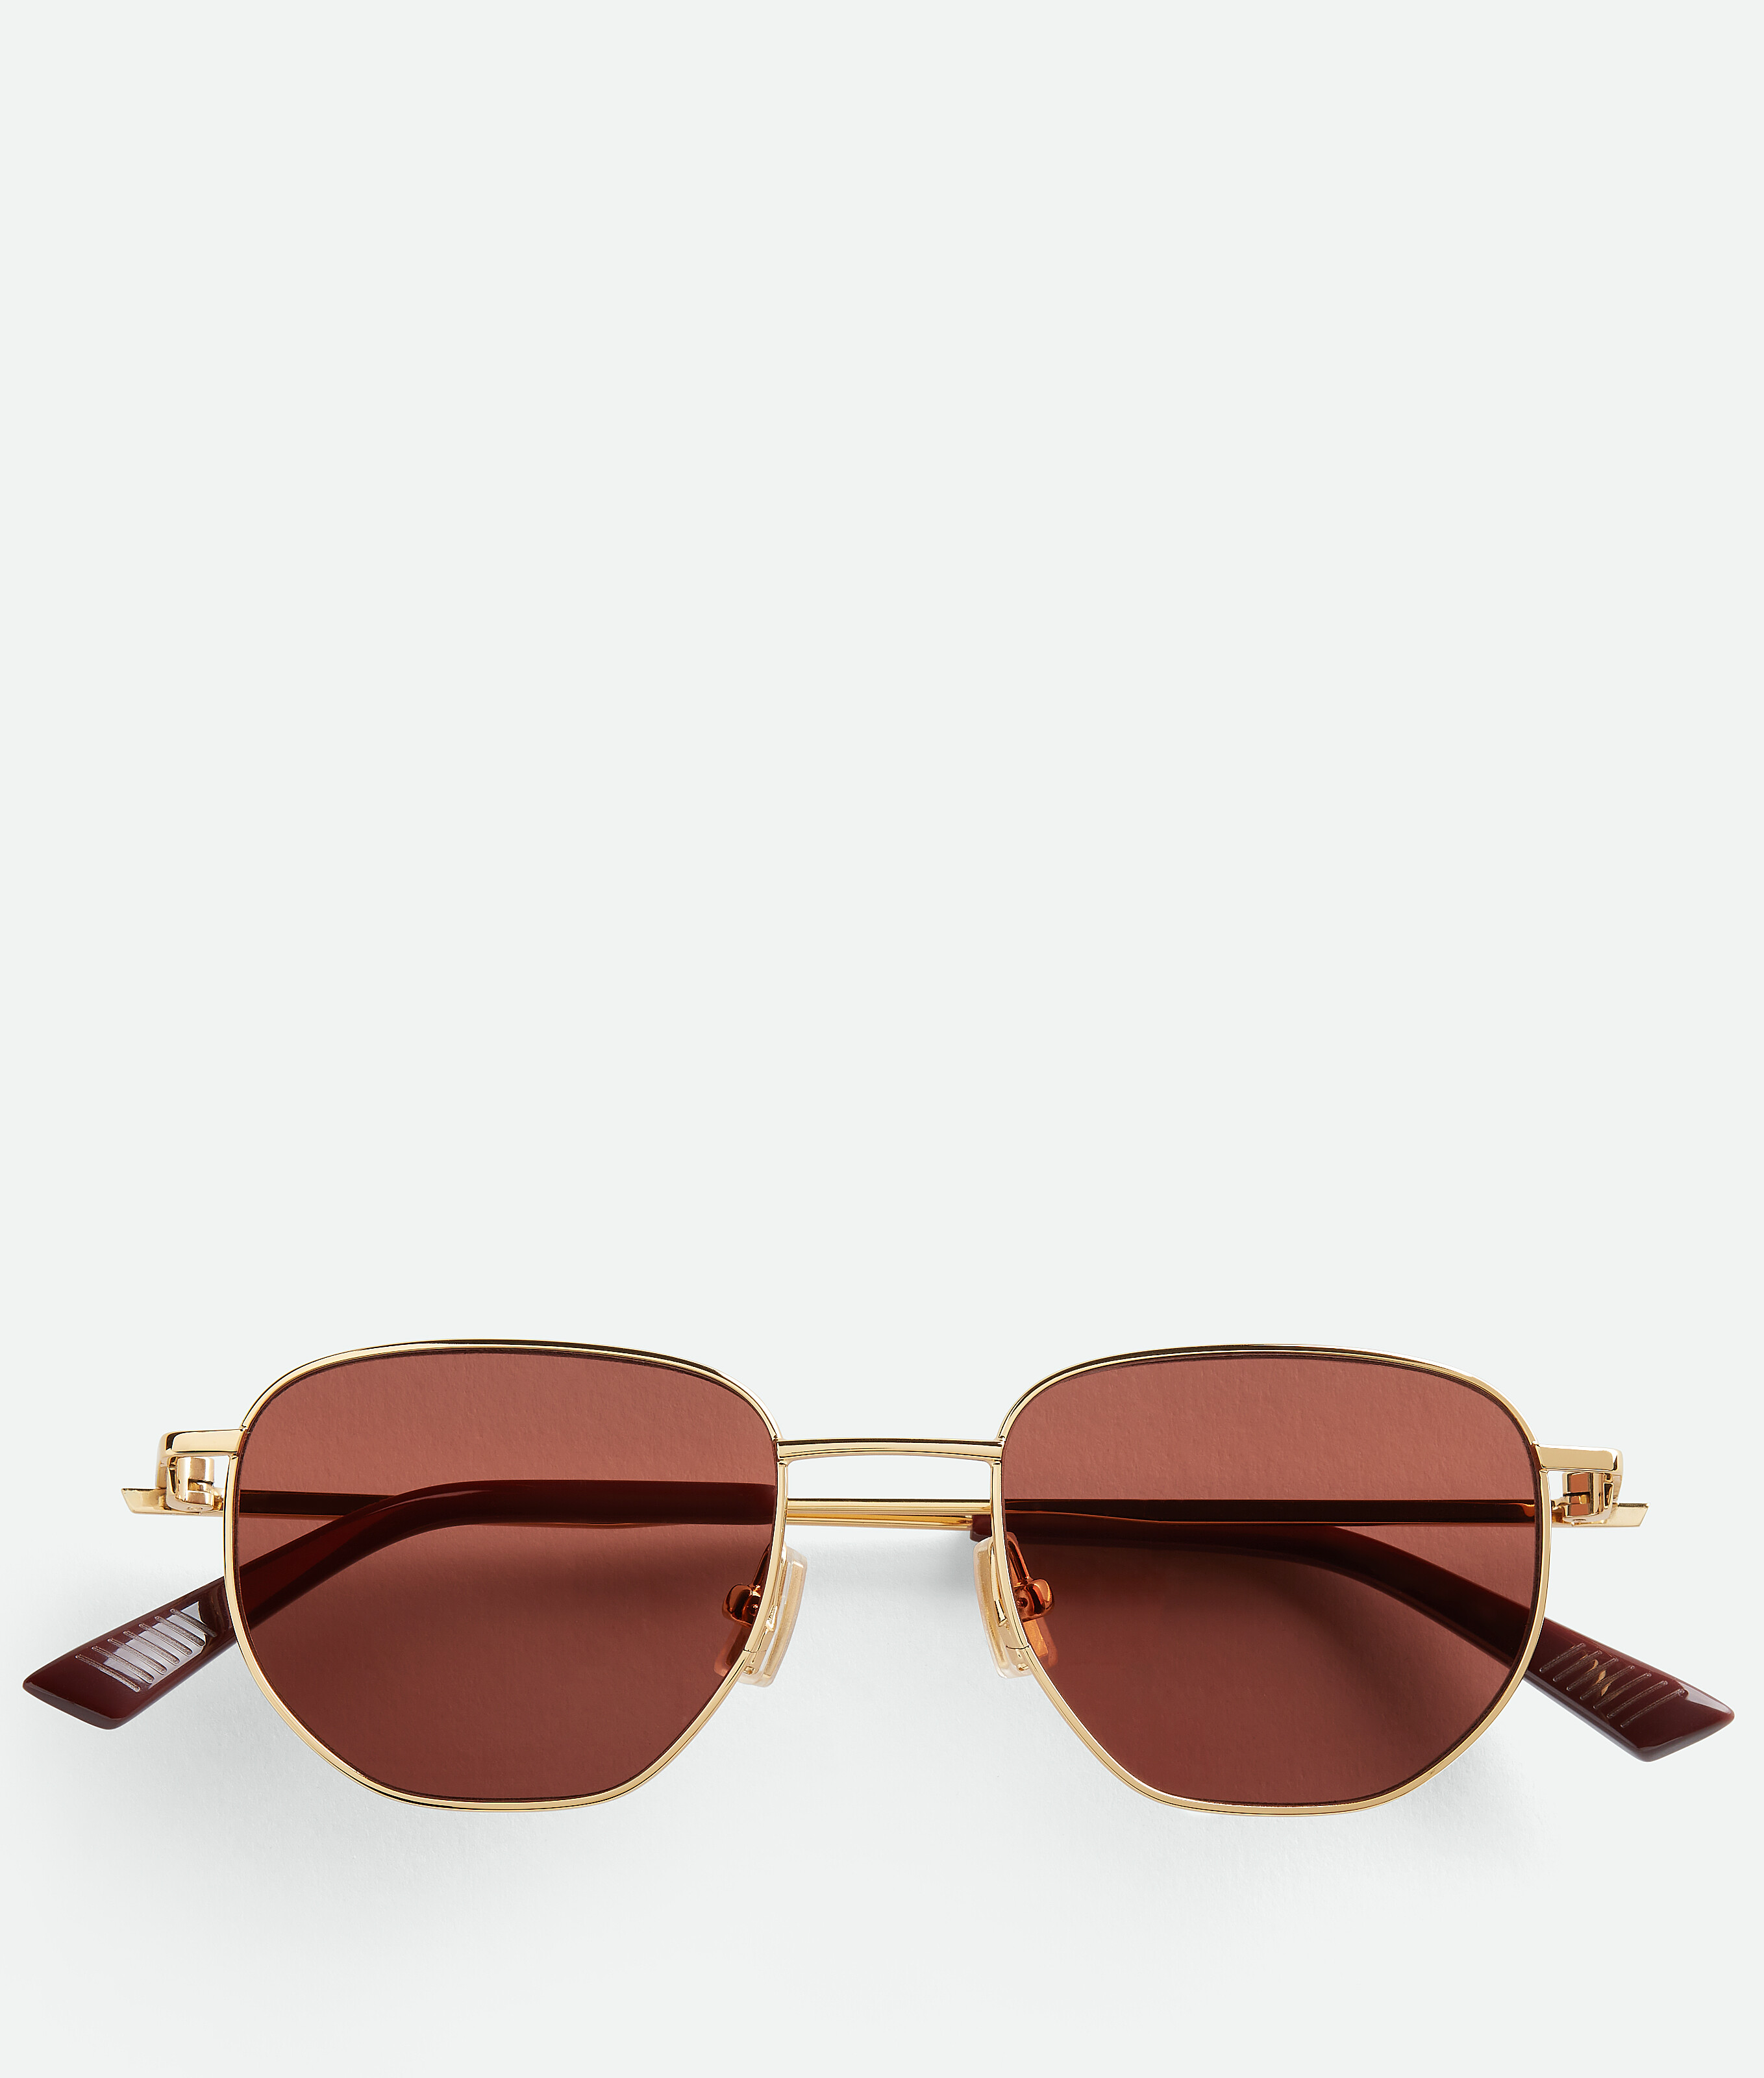 Bottega Veneta Split Trouserhos Sunglasses In Gold